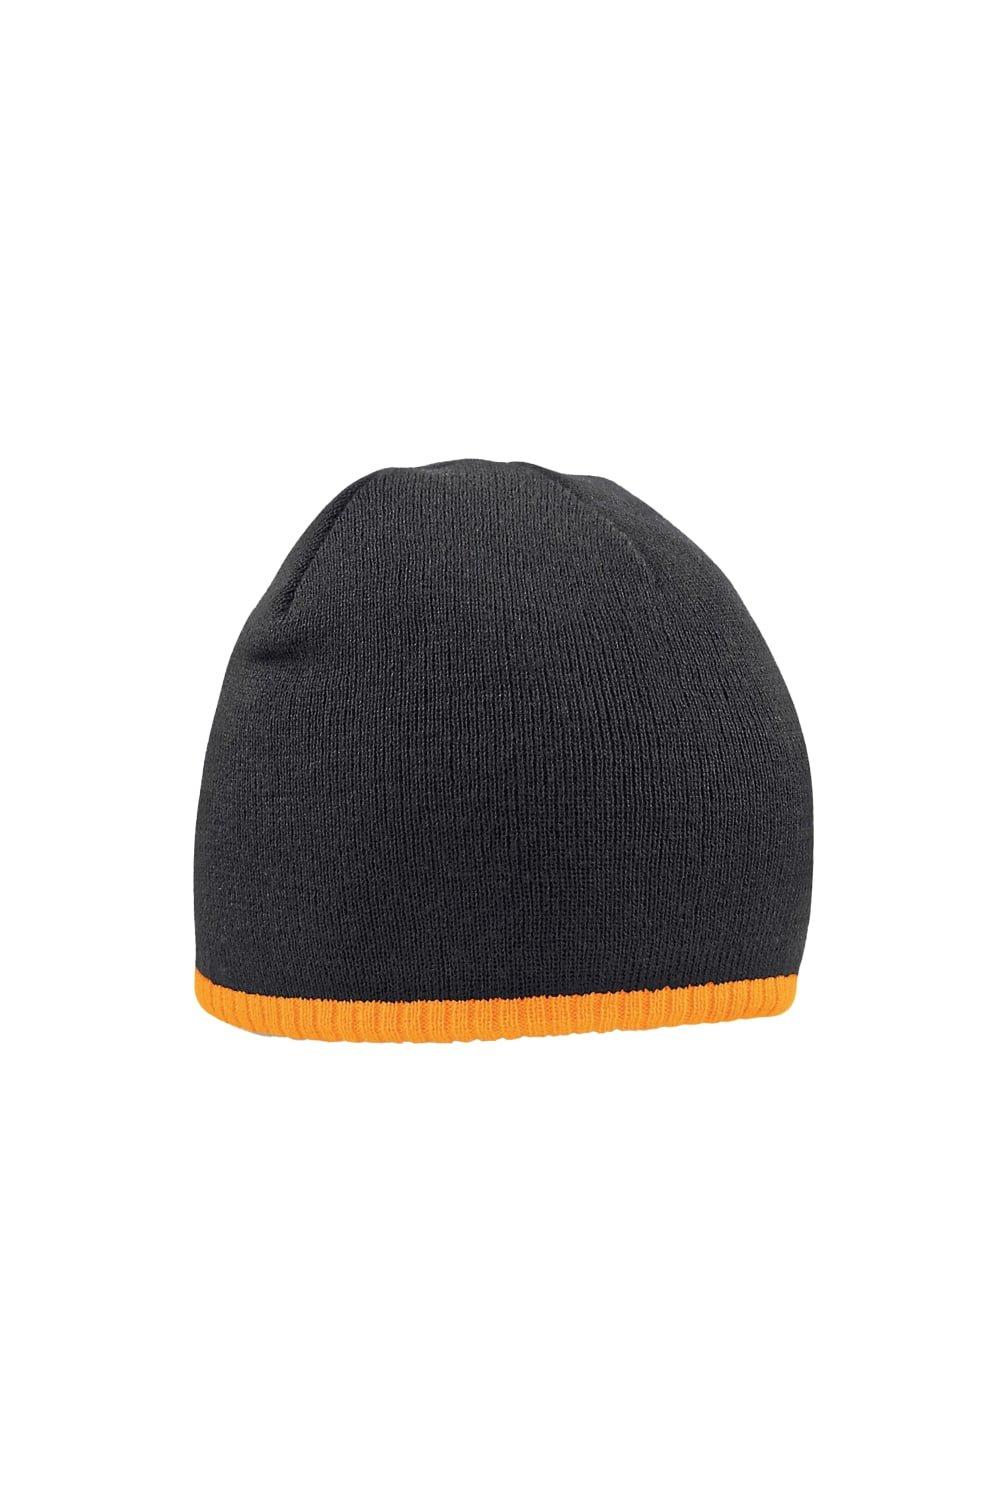 Двухцветная вязаная шапка Beechfield, черный двухцветная вязаная шапка sevenext